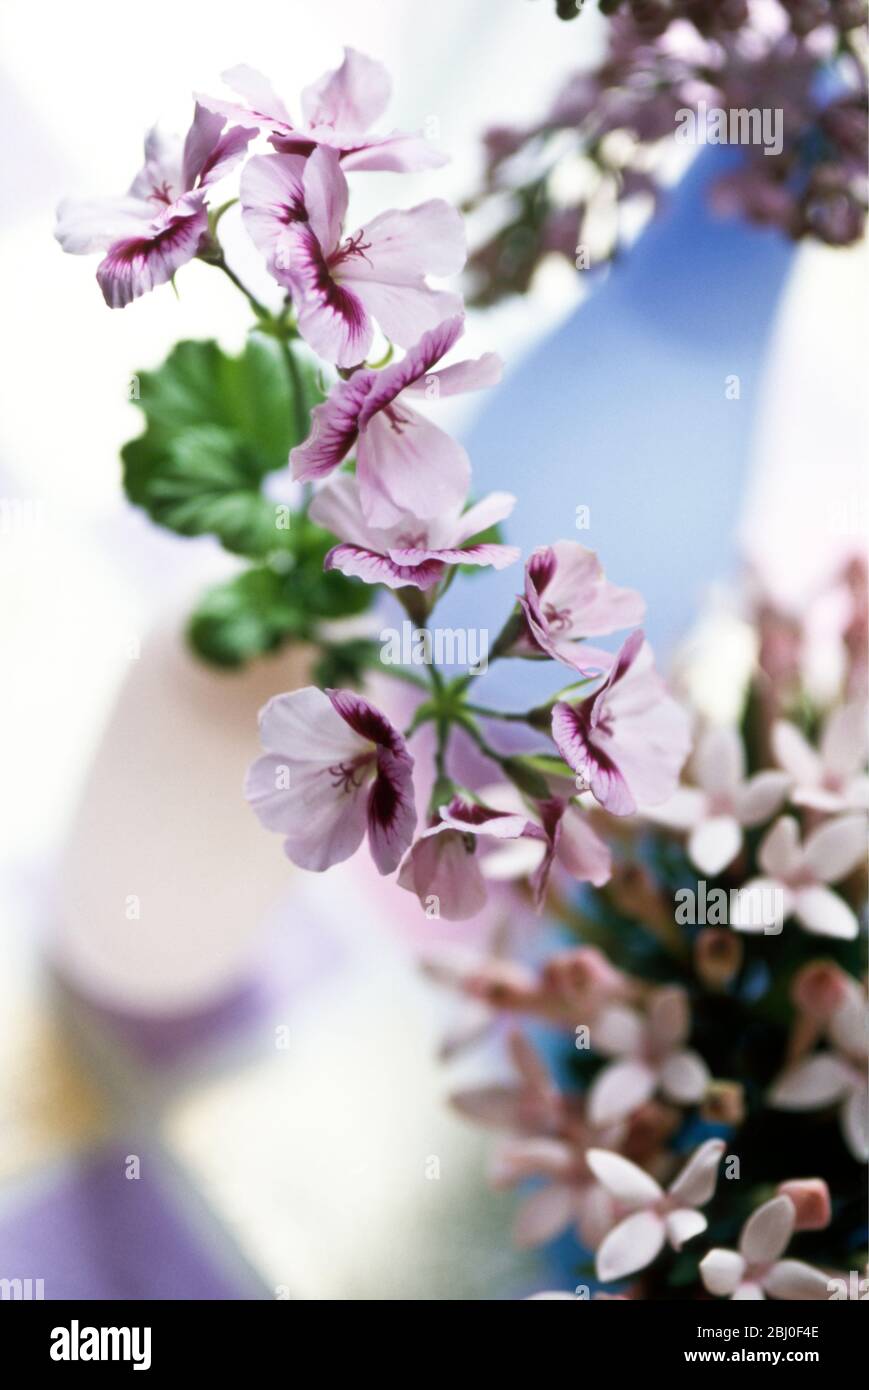 Une jolie table de différentes petites fleurs mauves et roses avec des vases en verre délicats sur une surface damée - Banque D'Images